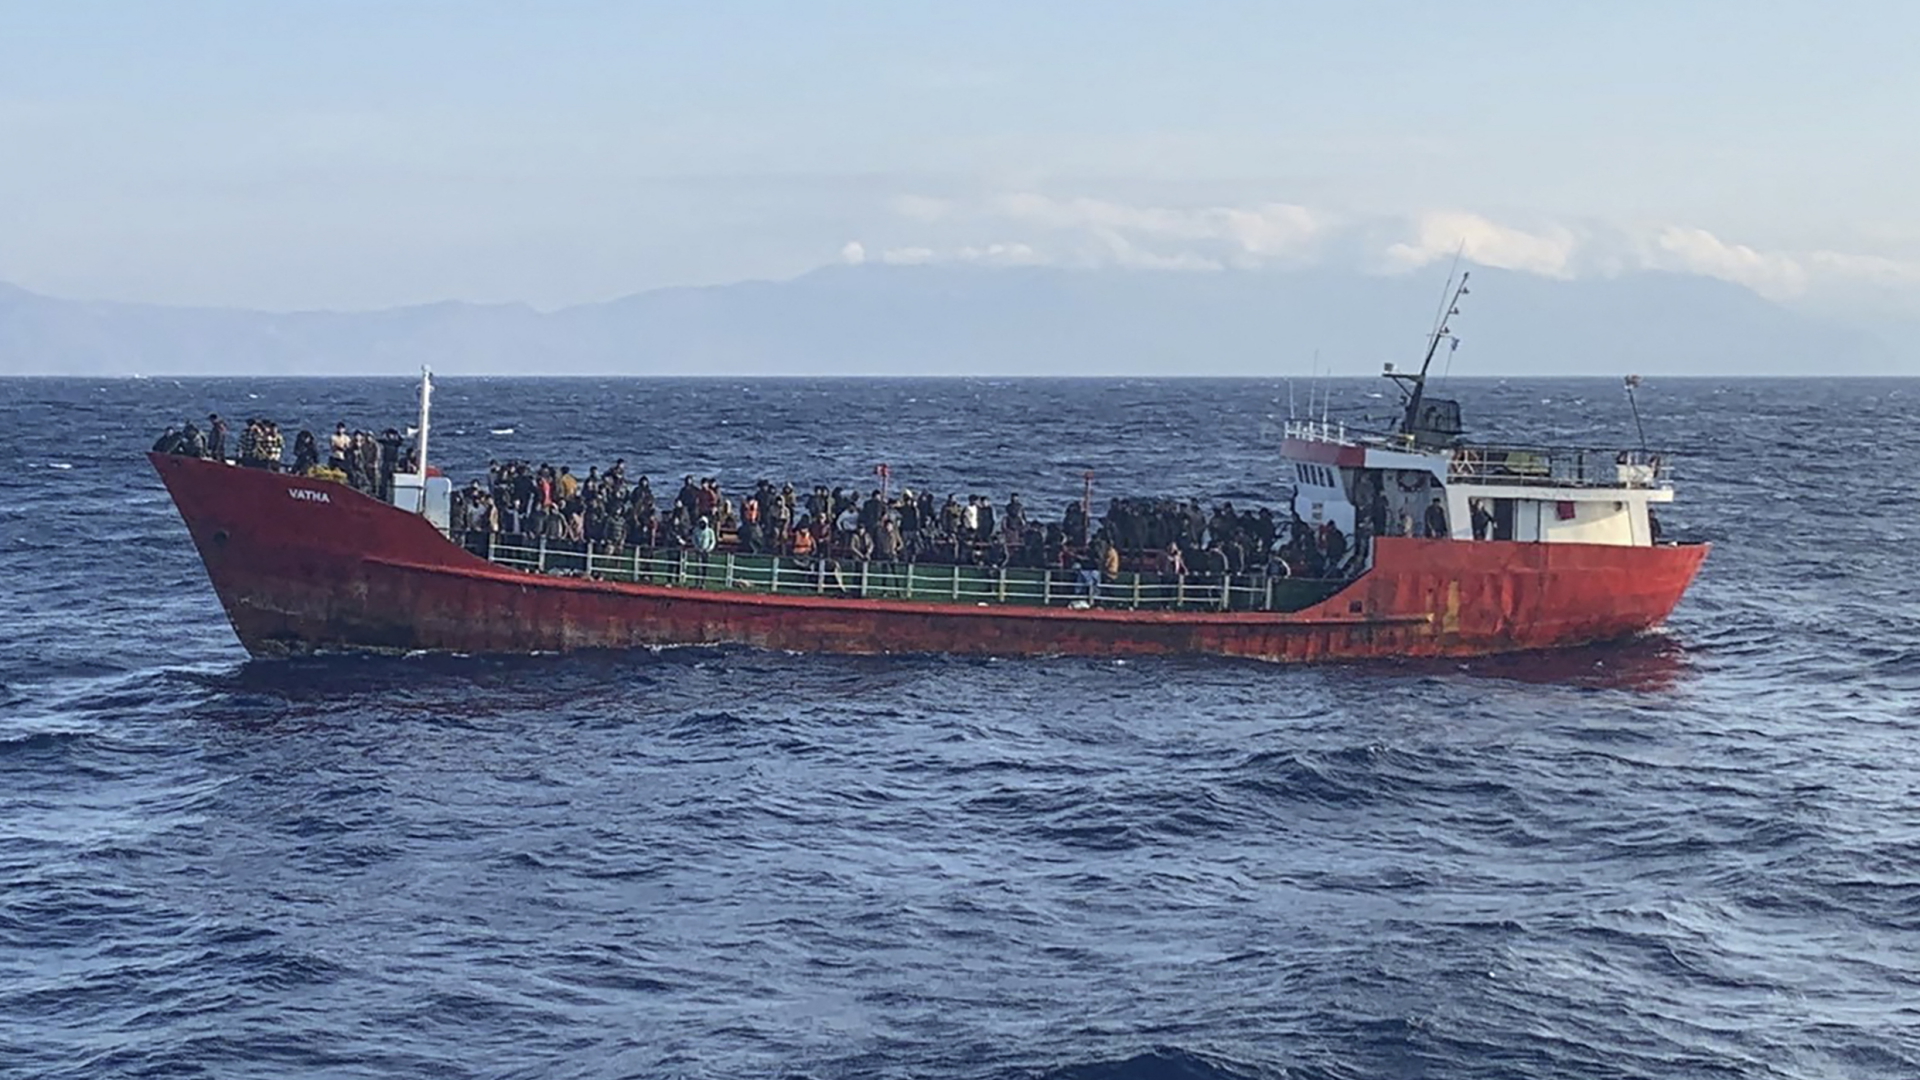 Archivbild: Migranten an Bord eines havarierten Frachters vor der griechischen Ägäis-Insel Kreta. | AFP